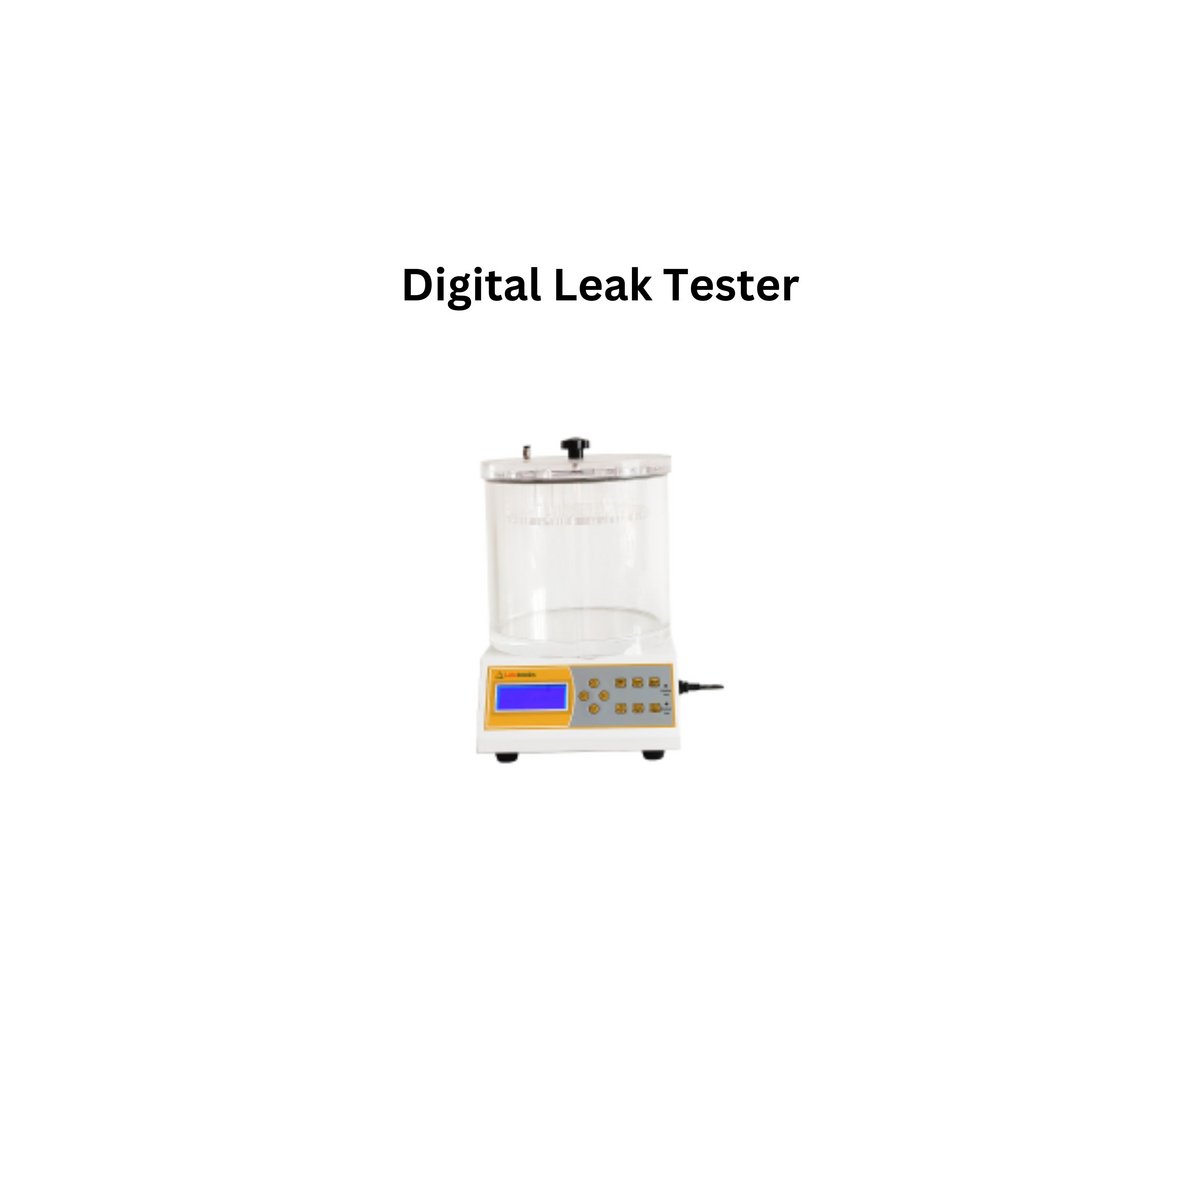 Digital Leak Tester.jpg